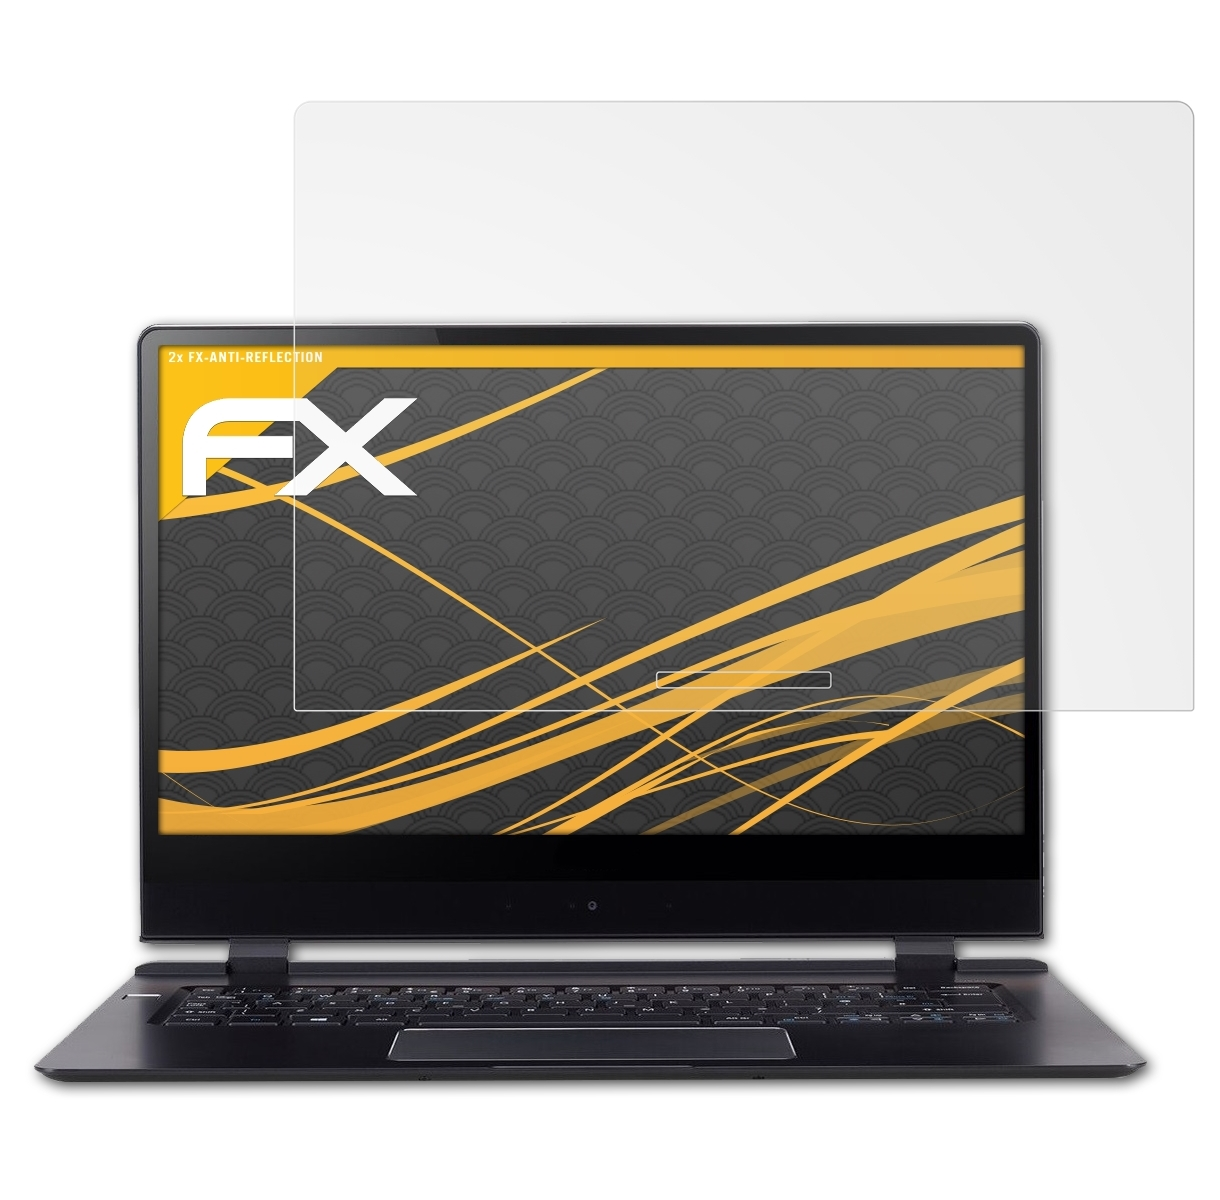 Acer ATFOLIX 2x Swift 7 (SF714-51T)) 2018 FX-Antireflex Displayschutz(für